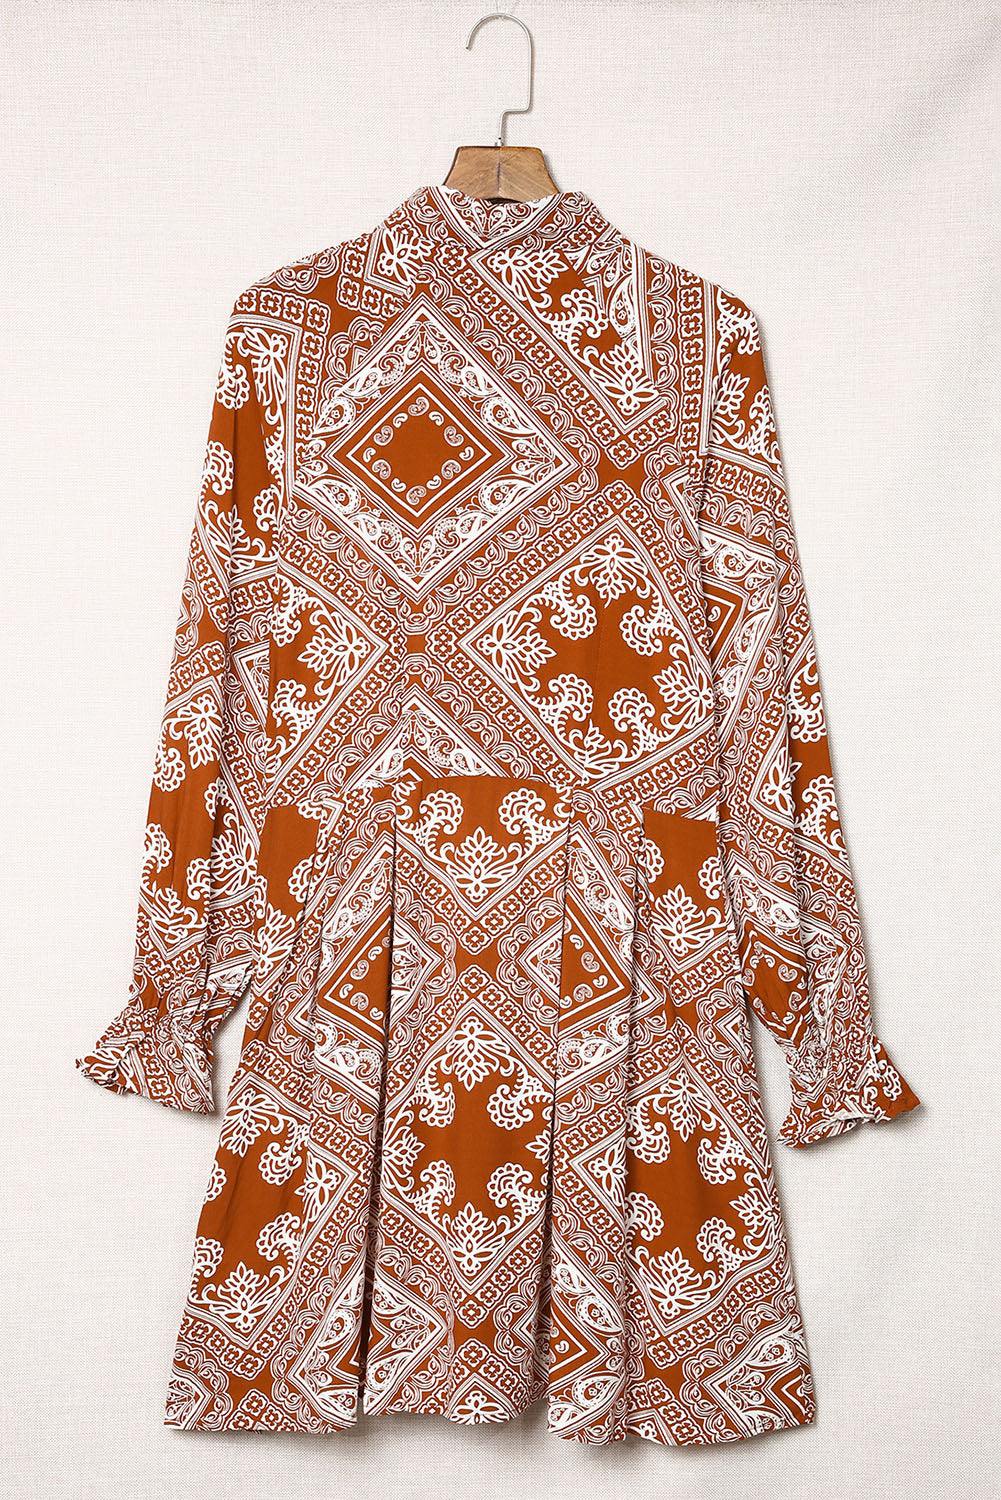 Vintage Paisley Geometric Print Shirt Short Dress Mini Dresses JT's Designer Fashion